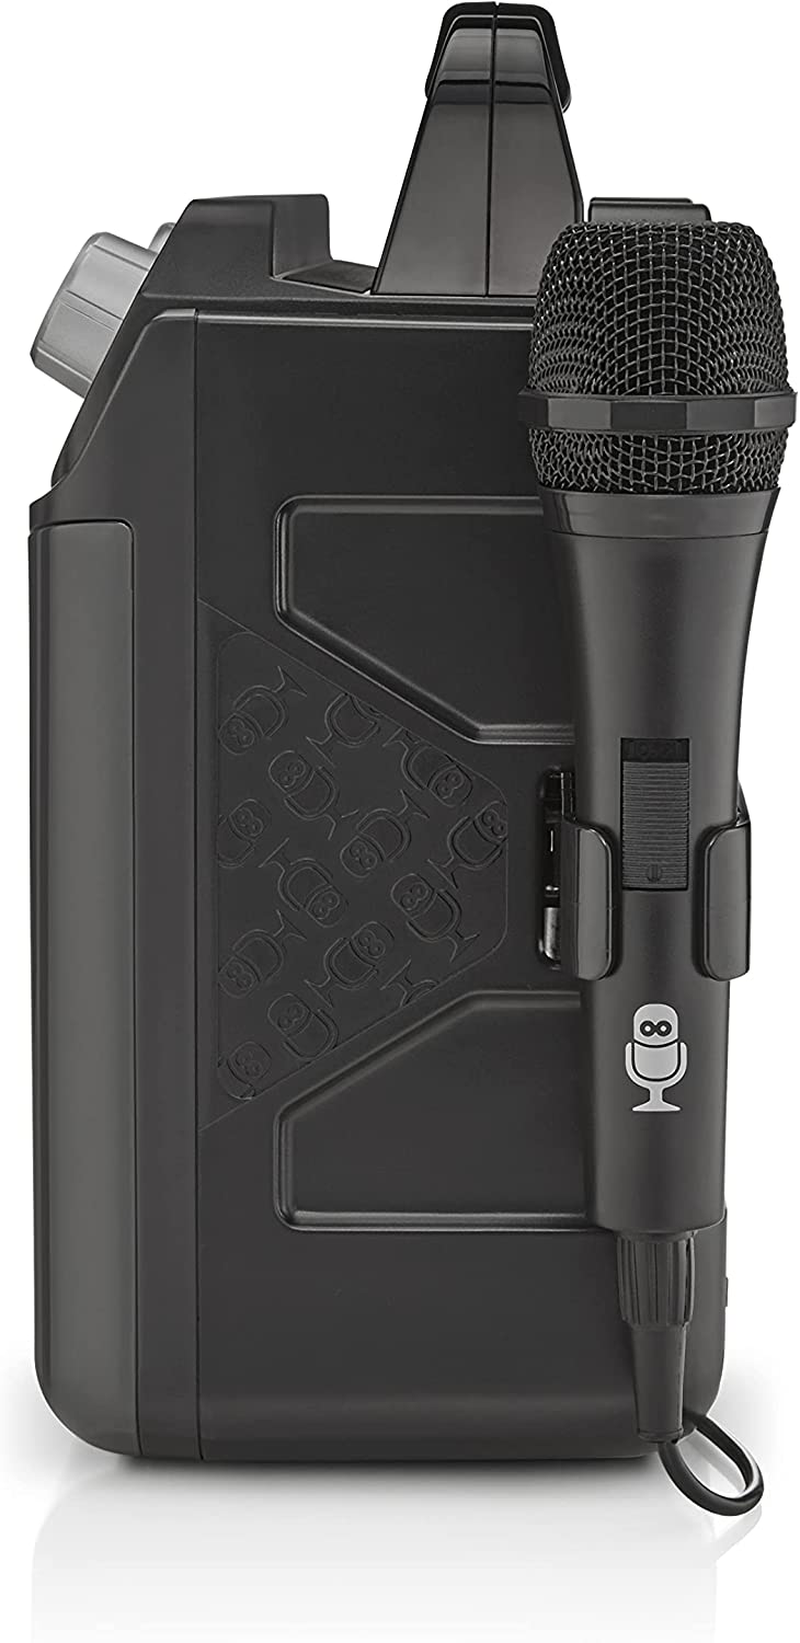 Singing Machine Karaoke System-Portable, Black (SML652BK)